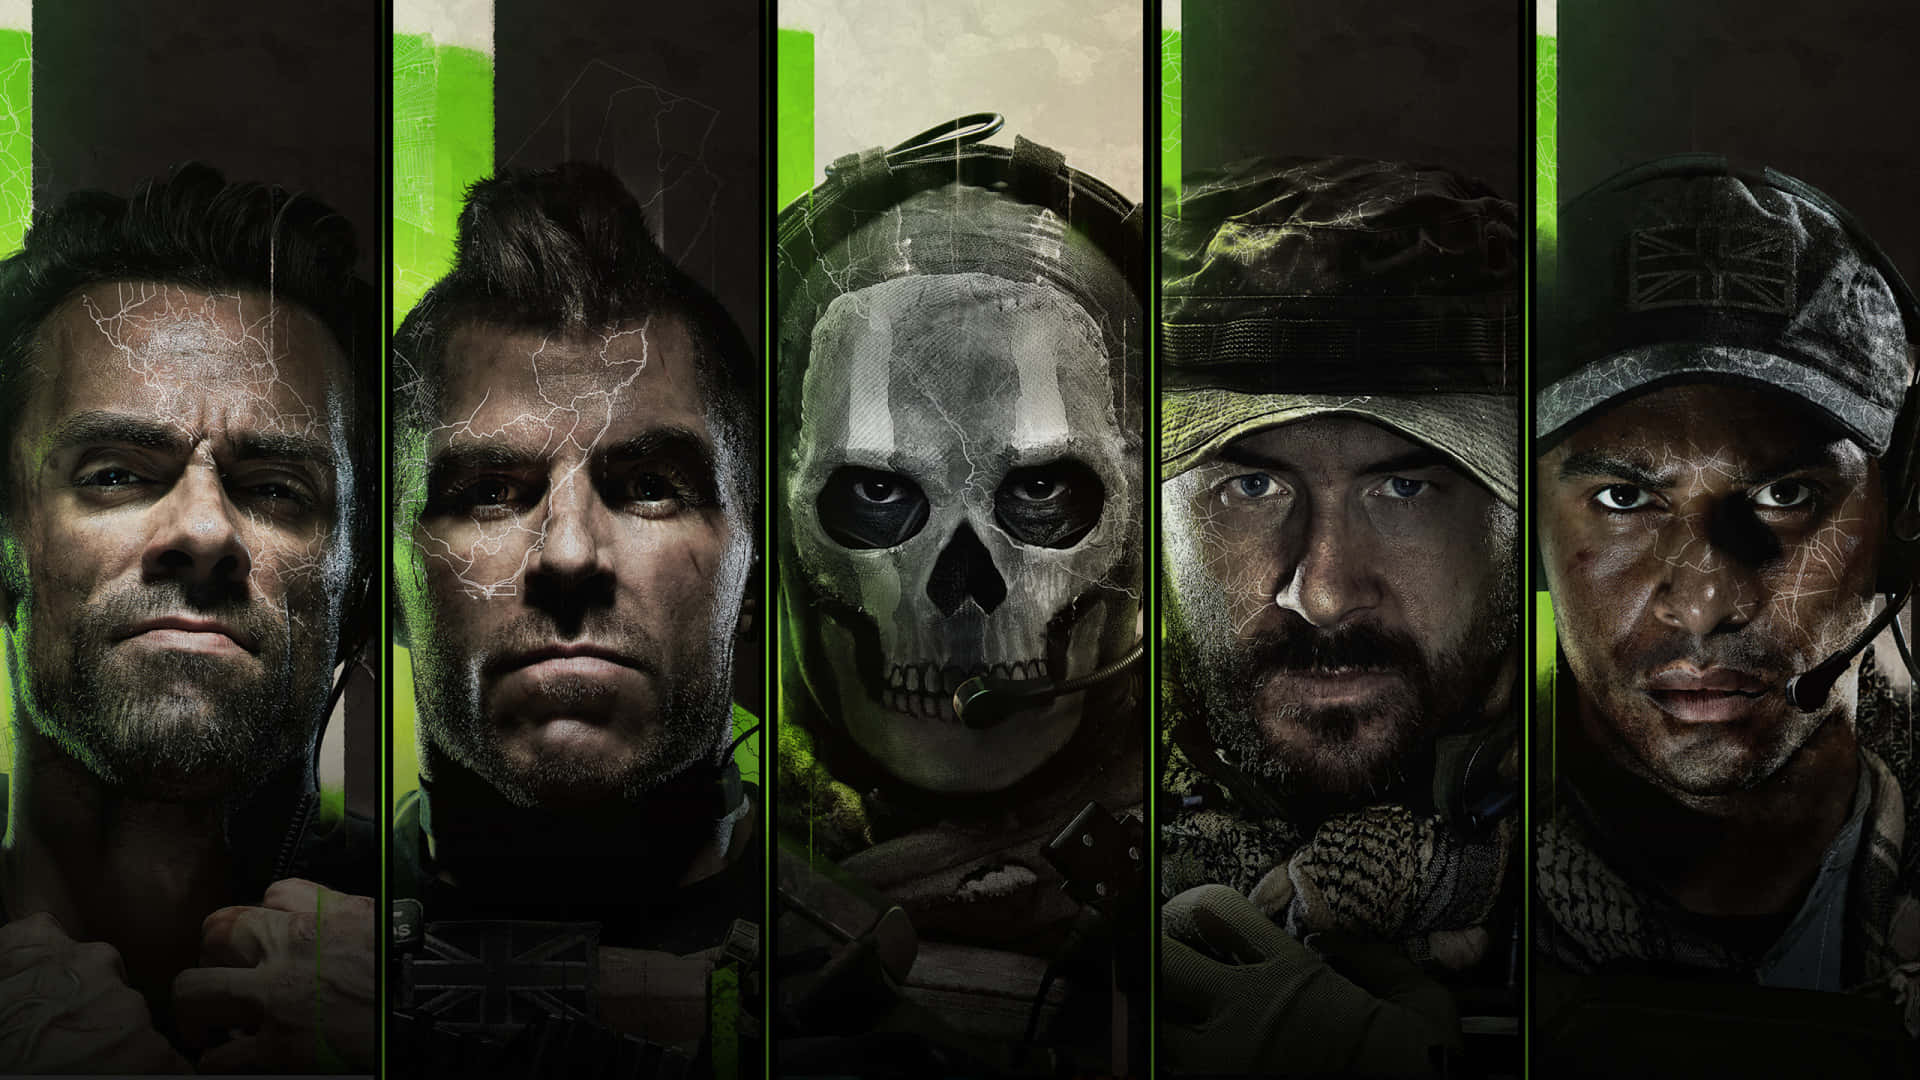 1440p Hintergrund Zu Call Of Duty Modern Warfare